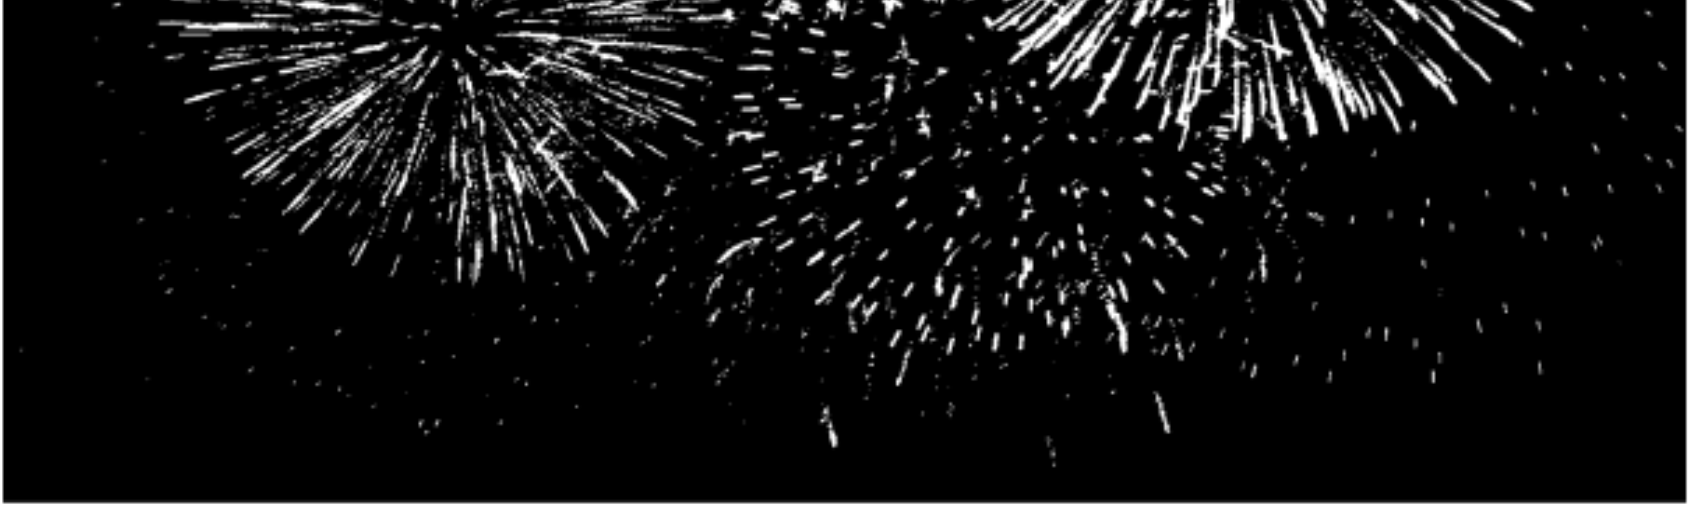 1o ΓΕΛ ΠΕΤΡΟΥΠΟΛΗΣ κεφάλαιο 2 111B. 21331-16162 Β.2 Το κύριο στέλεχος του πυροτεχνήματος εκρήγνυται όταν φτάσει στο ανώτερο ύψος της κατακόρυφης τροχιάς του, όπως φαίνεται και στην πιο κάτω εικόνα.